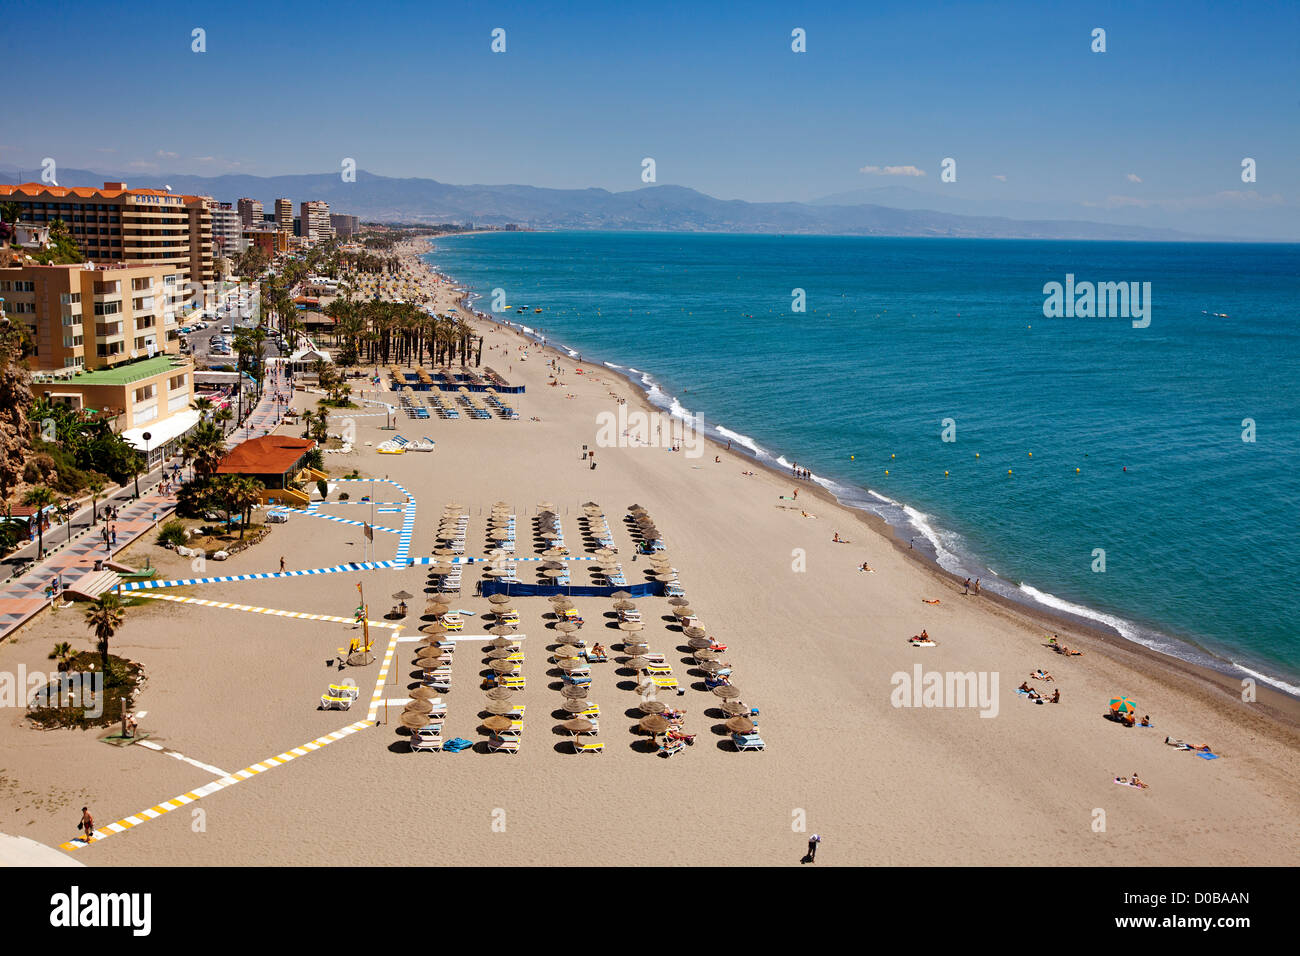 La plage de Bajondillo Torremolinos Malaga Costa del Sol Andalousie Espagne Banque D'Images